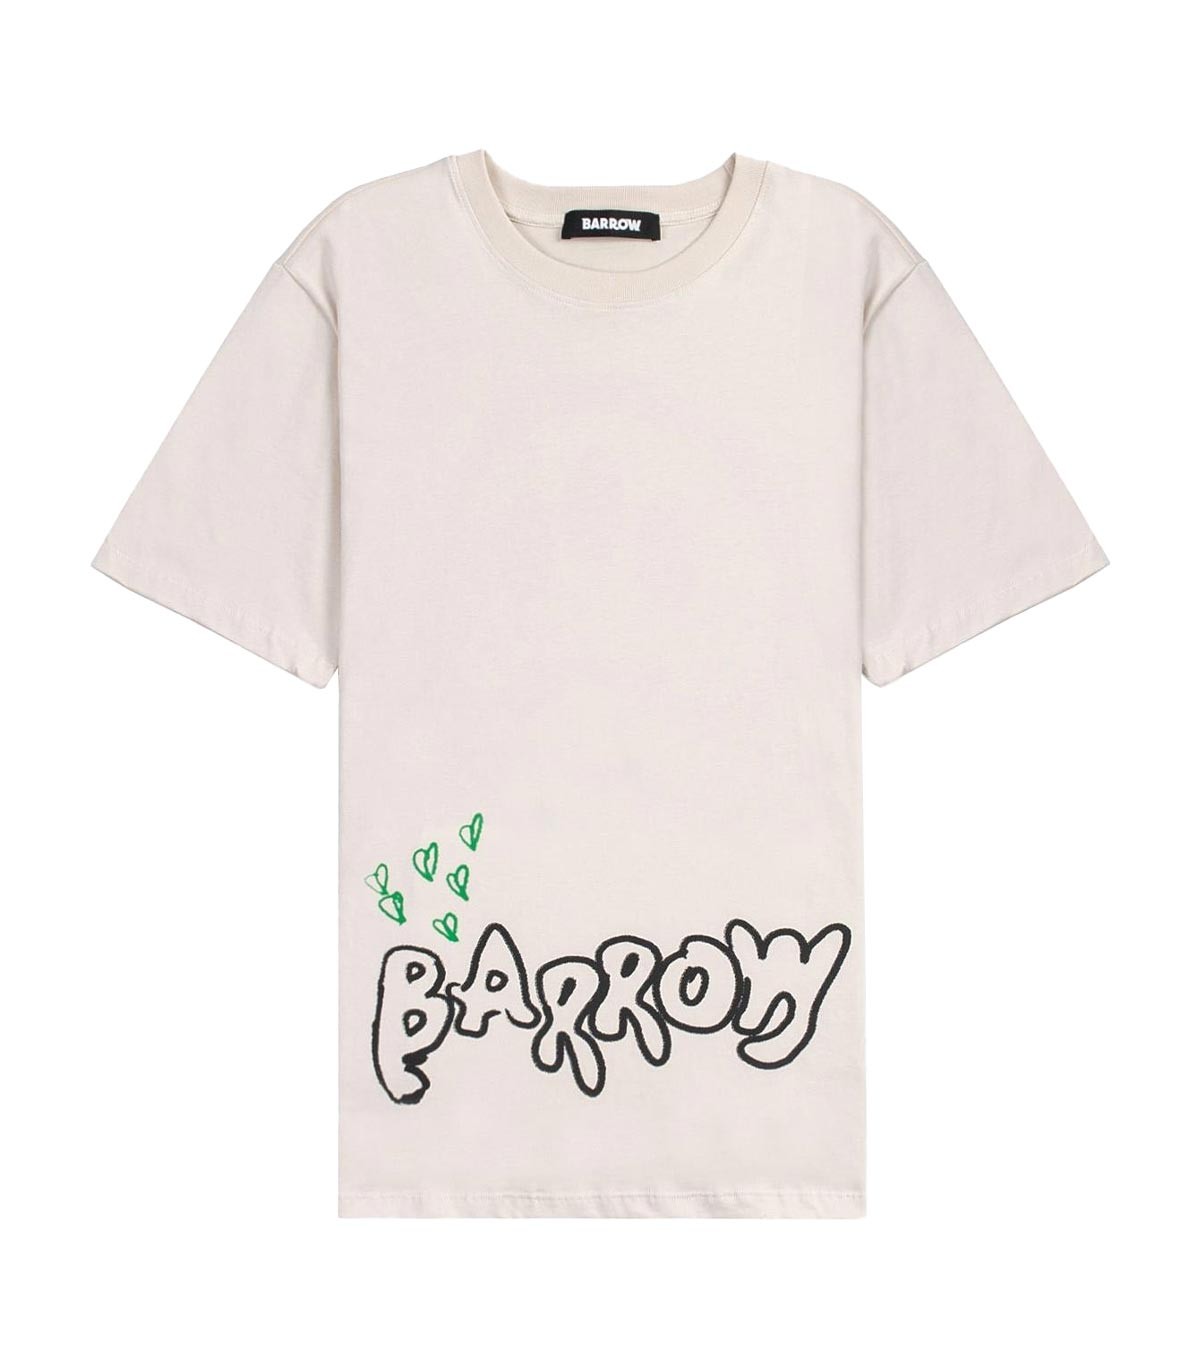 Barrow - Camiseta con Gráfico - Beige